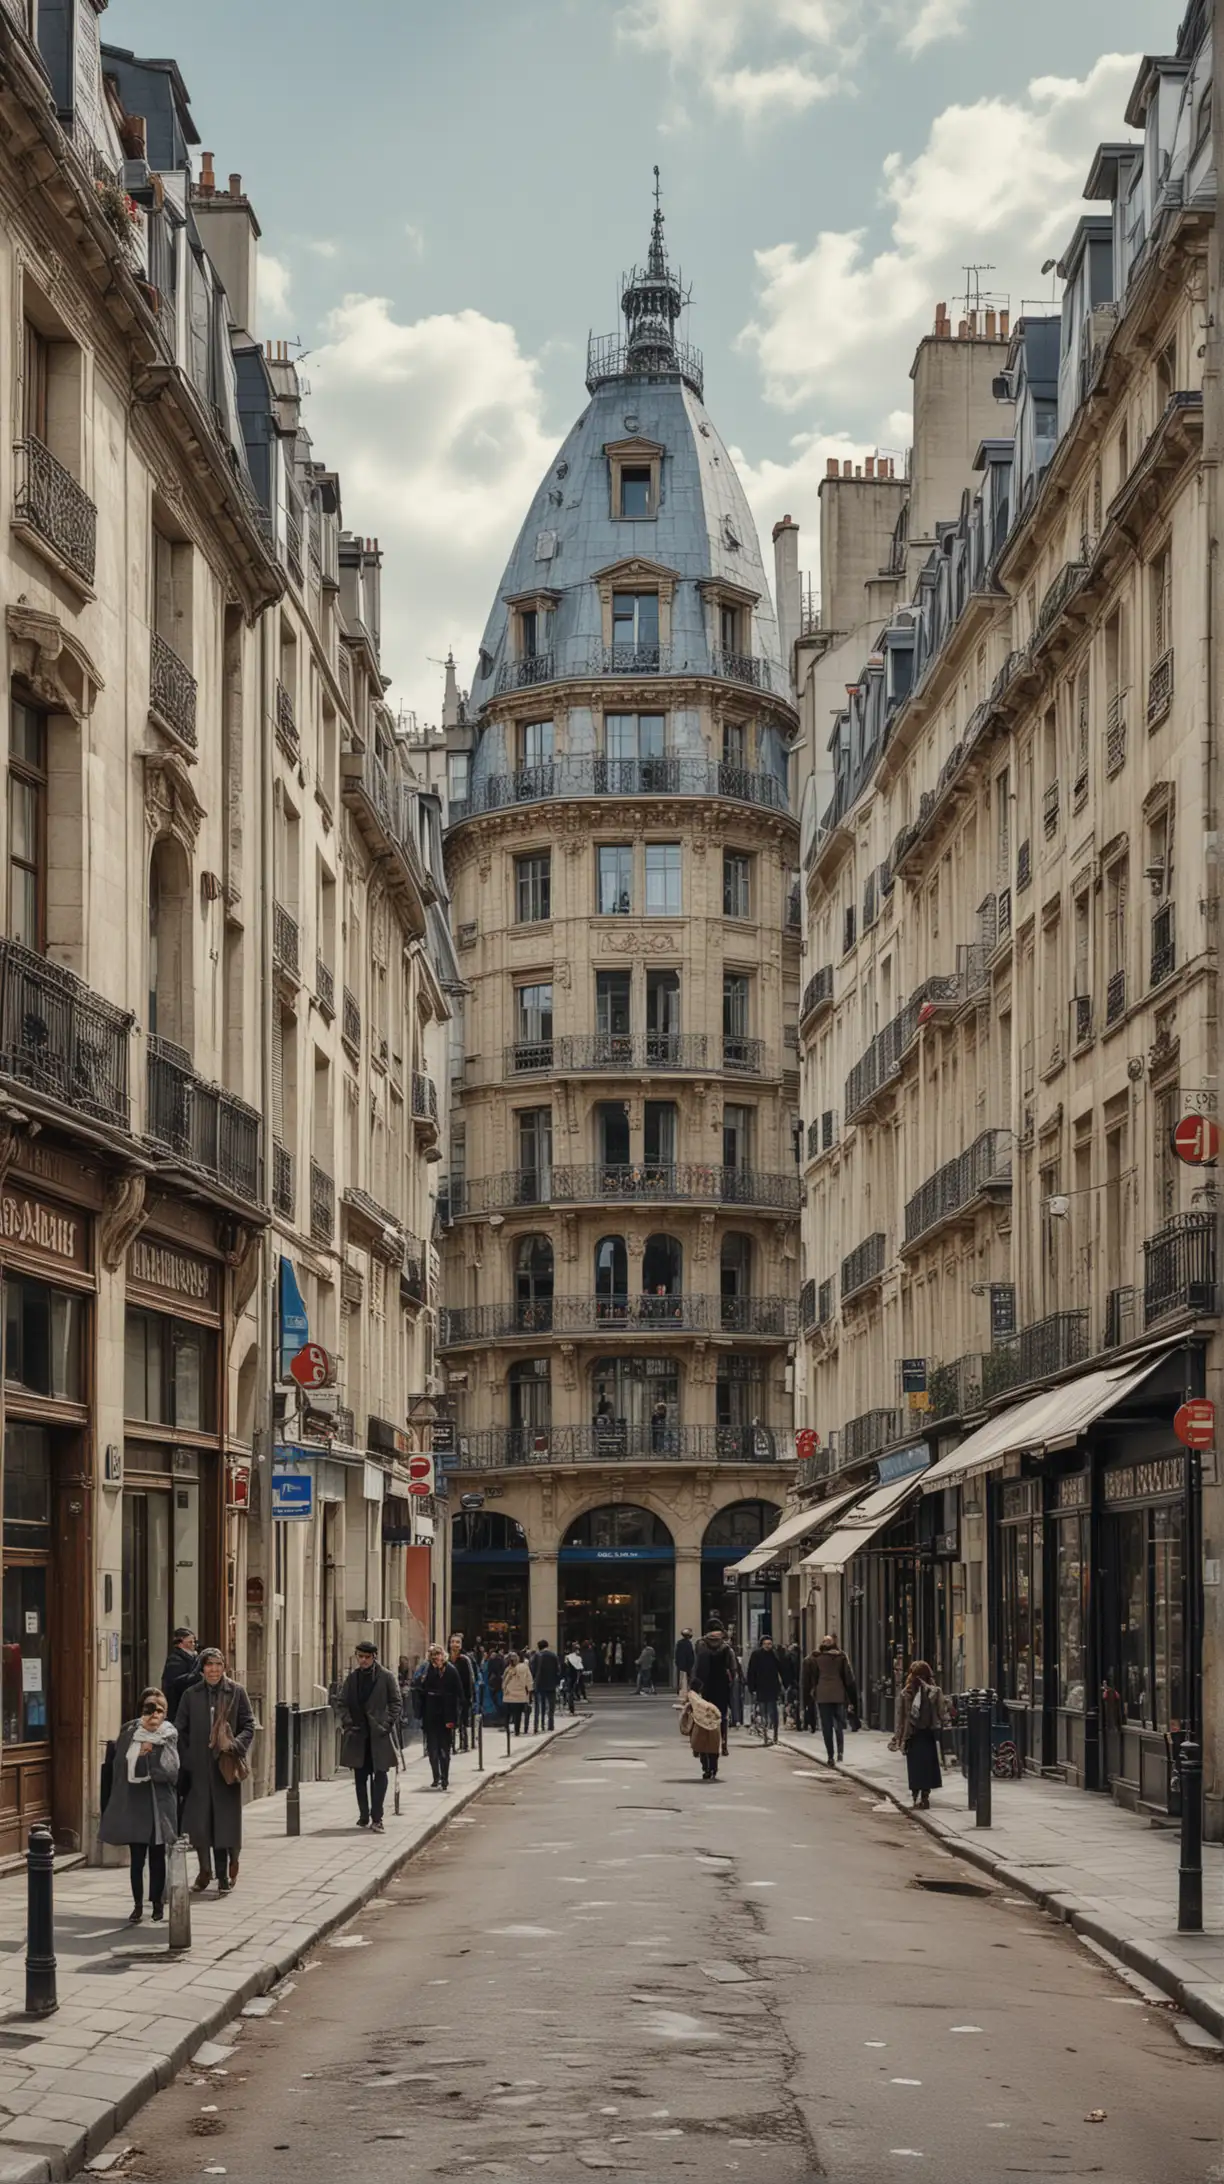 Obraz zobrazuje ulicu v Paríži počas konca 19. storočia. V centre pozornosti je veža, ktorá je zakrytá lešením, čo naznačuje, že je v rekonštrukcii. Veža je dominantným prvkom v pozadí, vyniká svojou výškou a obklopením budovami.

V popredí sú ulice lemované obchodmi a bytovými domami. Na ľavej strane obrazu je vysoká budova s arkierovým oknom a s mansardovou strechou, typickou pre parížsku architektúru. Vedľa nej, v centre obrazu, je otvorený priestor s niekoľkými ľuďmi, ktorí prechádzajú ulicou. Niektorí ľudia sú oblečení v dlhých kabátoch a klobúkoch, čo je charakteristické pre obdobie konca 19. storočia. 

Na pravej strane obrazu je modrá budova s nápisom "Le Petit Journal", čo je názov novín. Pod týmto nápisom je veľký inzerát, ktorý uvádza počet výtlačkov predaných novín. Vedľa tejto budovy sú ďalšie obchodíky a kaviarne s výkladmi.

Ulica je pokrytá svetlým dlažbovým povrchom a je lemovaná stromami, ktoré sú ešte bez listov, čo naznačuje, že je buď neskorá jeseň alebo skorá jar. Obloha je modrá s niekoľkými bielymi oblakmi, čo dodáva obrazu jasnú a živú atmosféru.

Celkovo obraz zachytáva rušnú mestskú scénu v historickom Paríži s dôrazom na architektúru, mestský život a prebiehajúcu rekonštrukciu ikonickej veže.